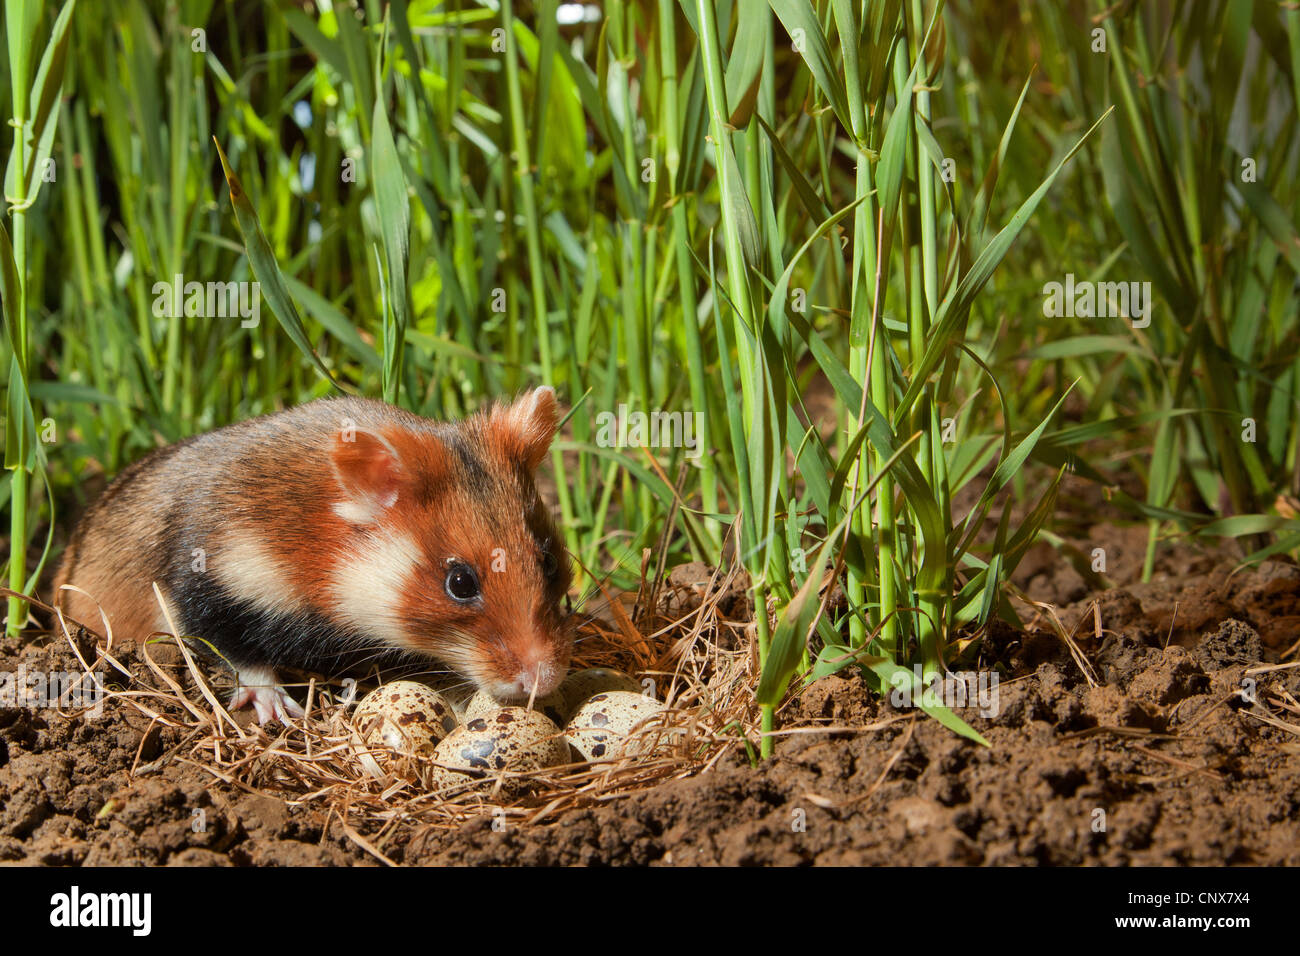 Hamster commun, black-bellied grand hamster (Cricetus cricetus), homme dans un champ de maïs à un nid avec des oeufs d'une caille, Allemagne Banque D'Images